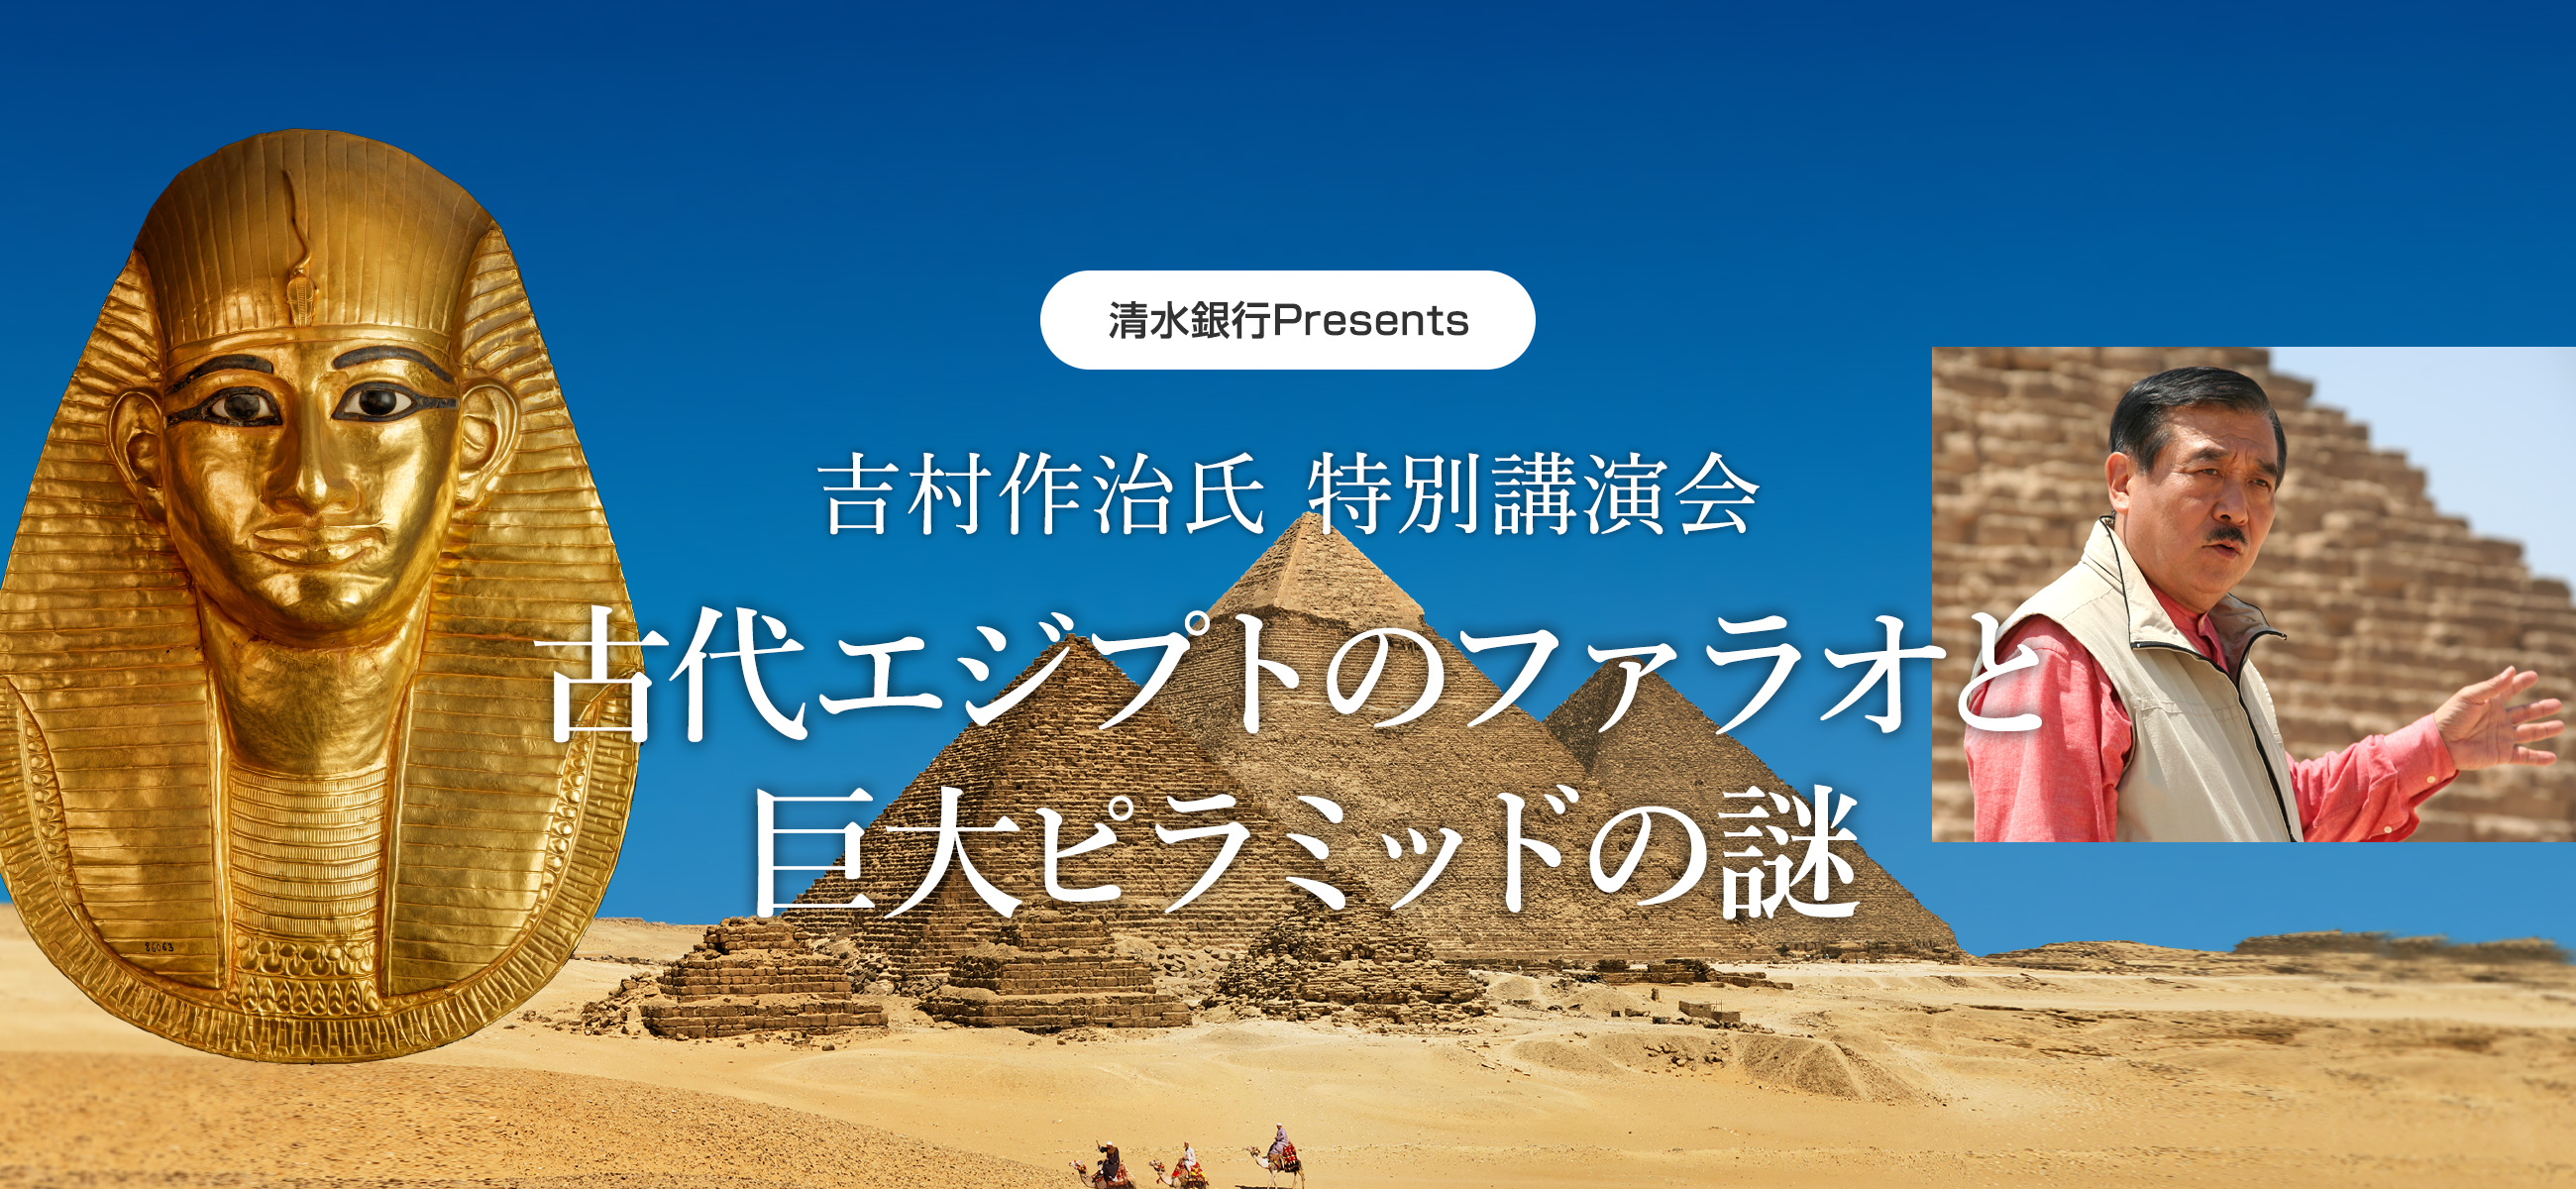 清水銀行Presents 特別講演会「古代エジプトのファラオと巨大ピラミッドの謎」